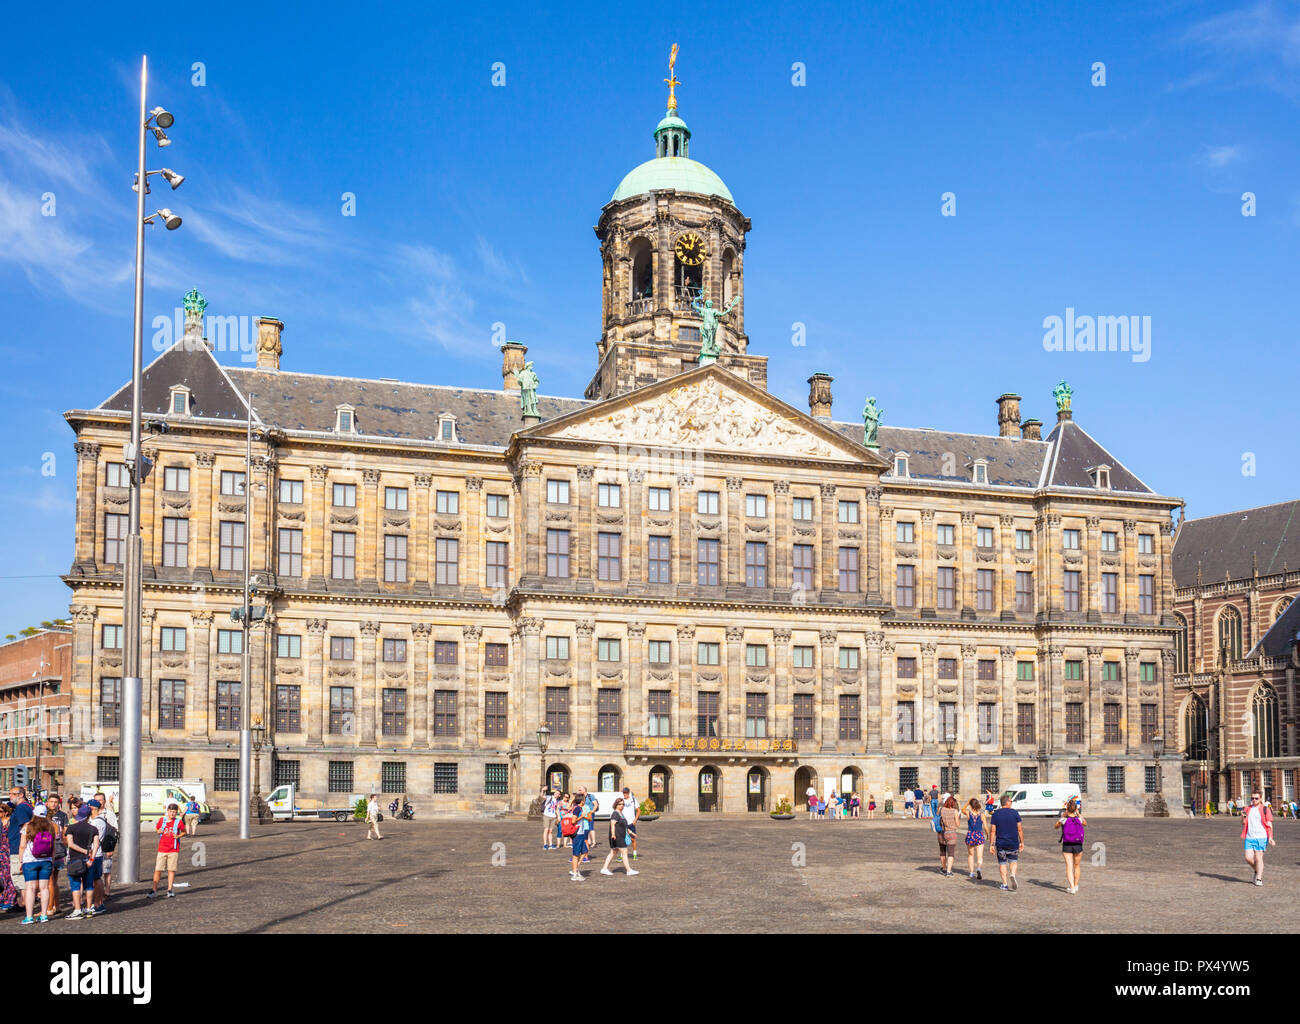 Palais Royal d'Amsterdam Koninklijk Paleis en place du Dam Amsterdam Amsterdam Pays-Bas Hollande centrale Europe de l'UE Banque D'Images